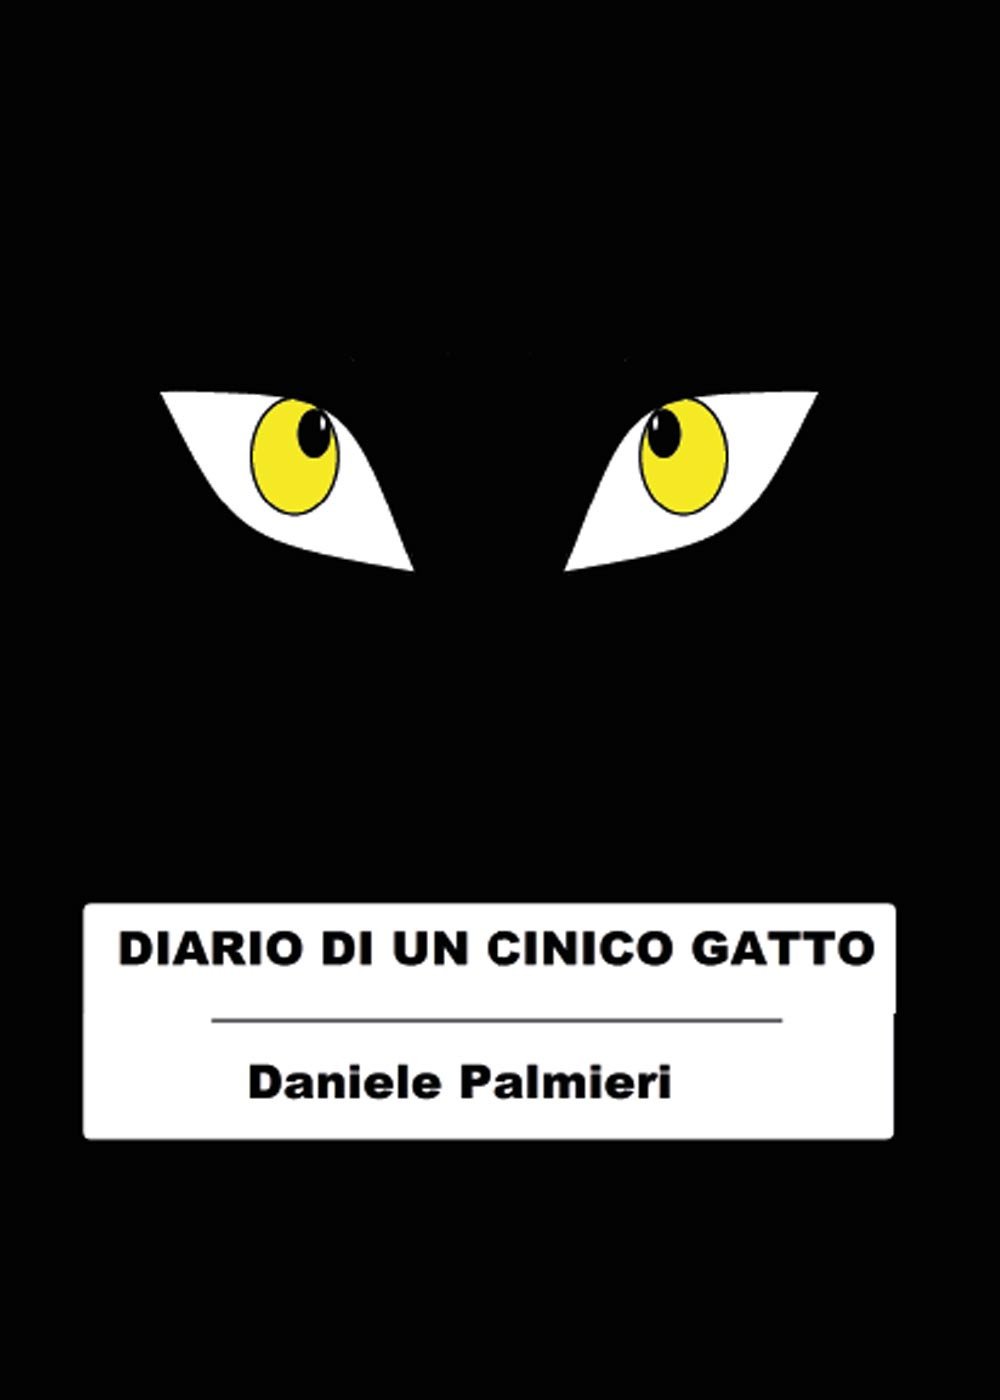 Diario di un cinico gatto di Daniele Palmieri